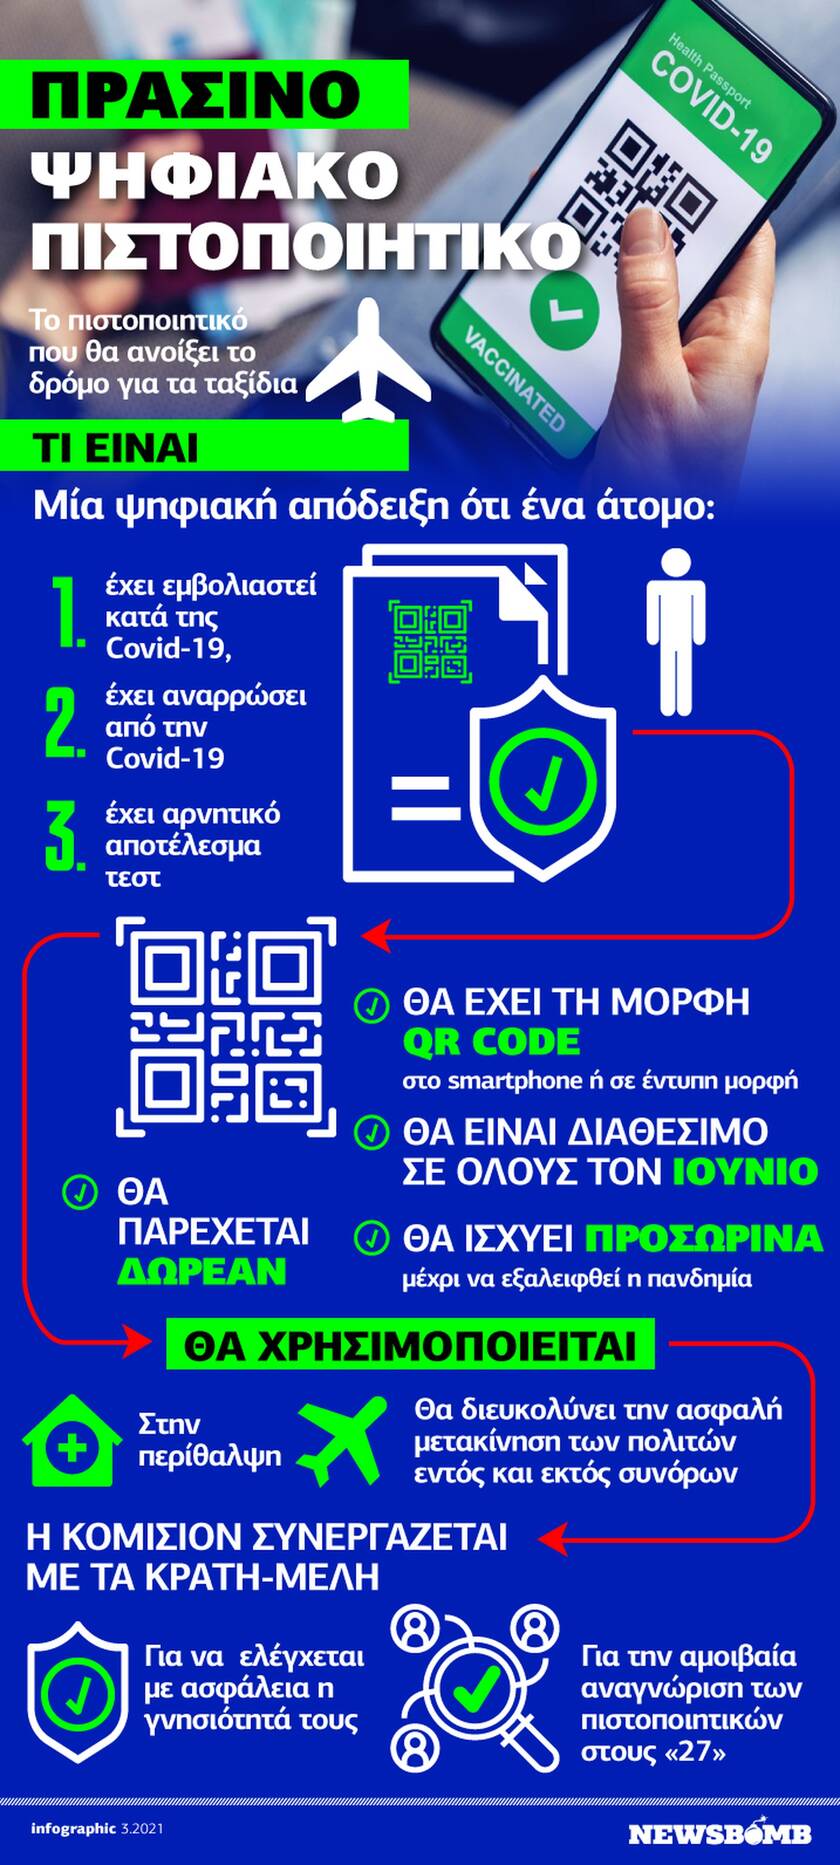 Πράσινο Ψηφιακό Πιστοποιητικό: Πώς θα «ξεκλειδώσουν» τα ταξίδια-Δείτε το Infographic του Νewsbomb.gr